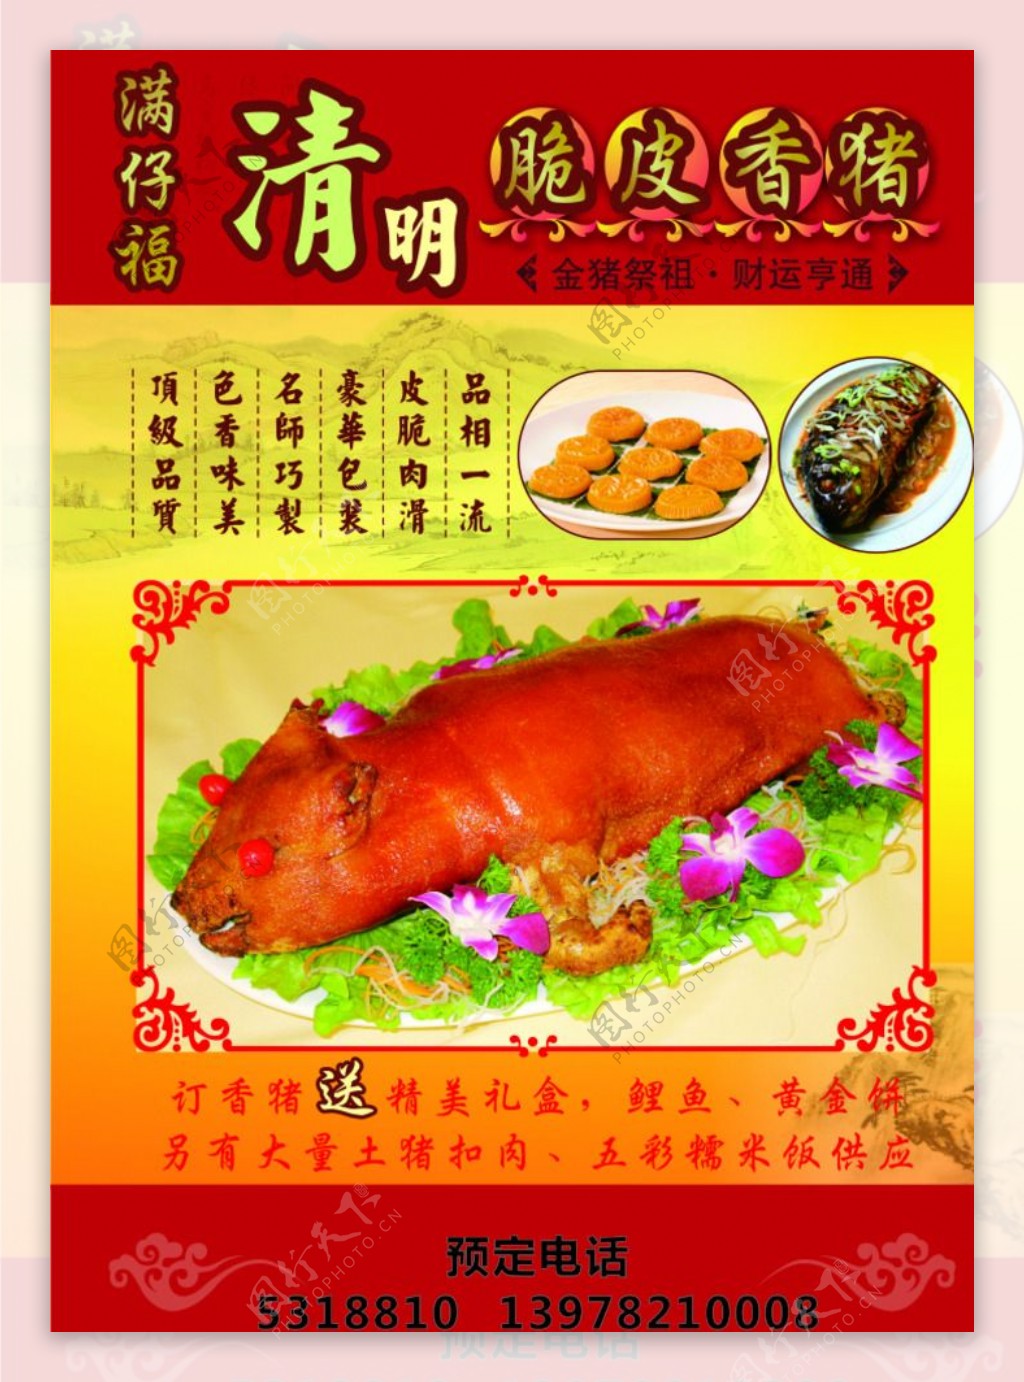 清明祭祖香猪图片